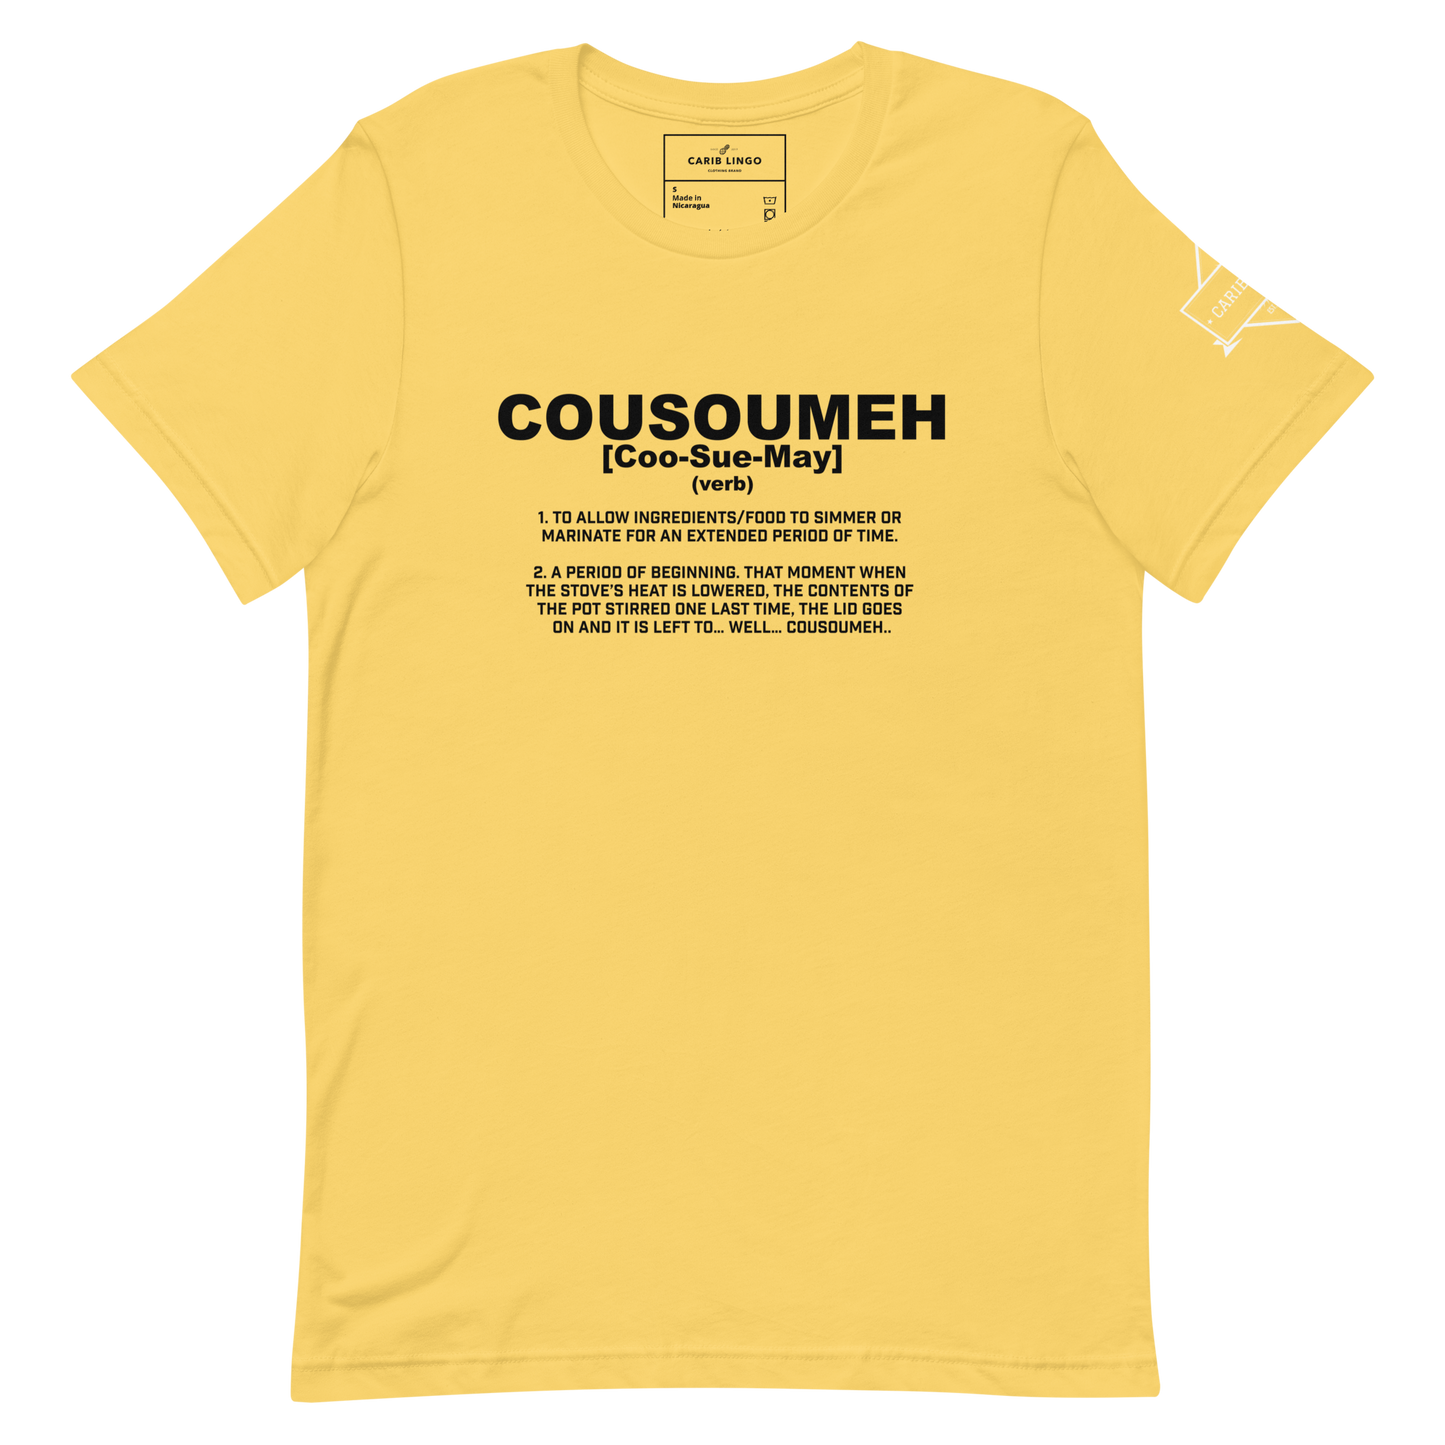 Cousoumeh t-shirt